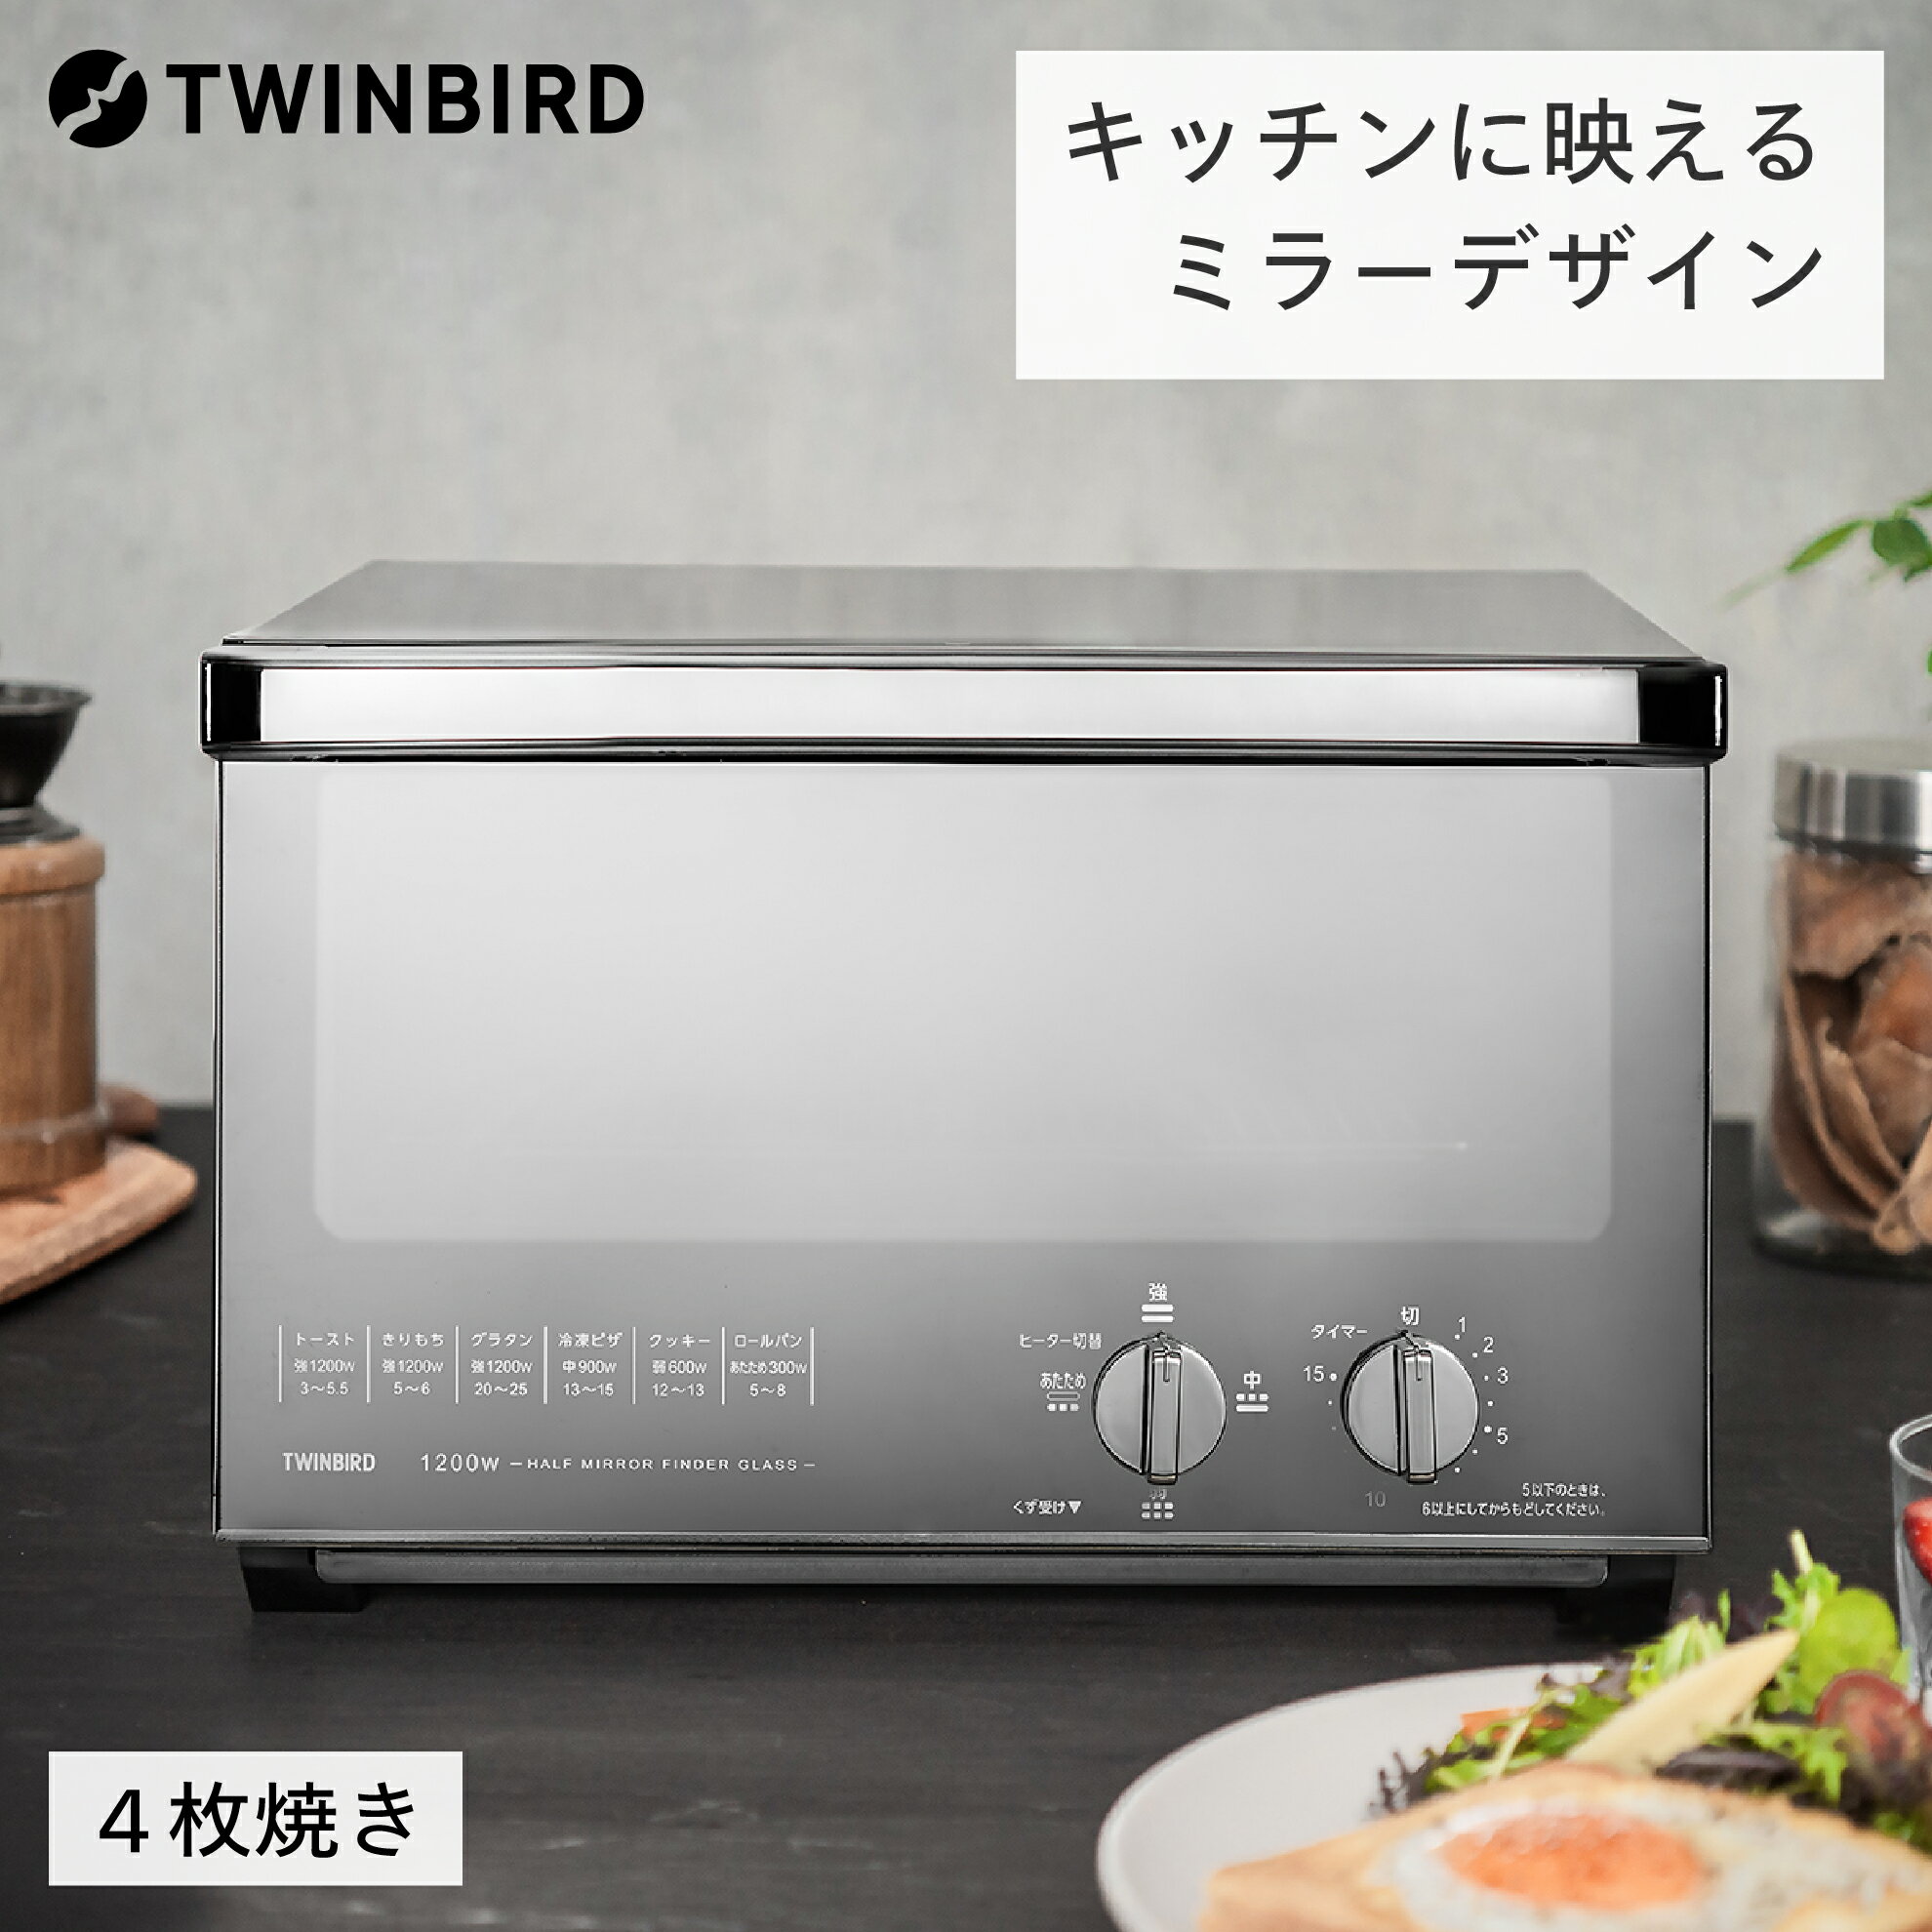 【ふるさと納税・3万円】家電 トースター キッチン ツインバード ミラーガラスオーブントースター